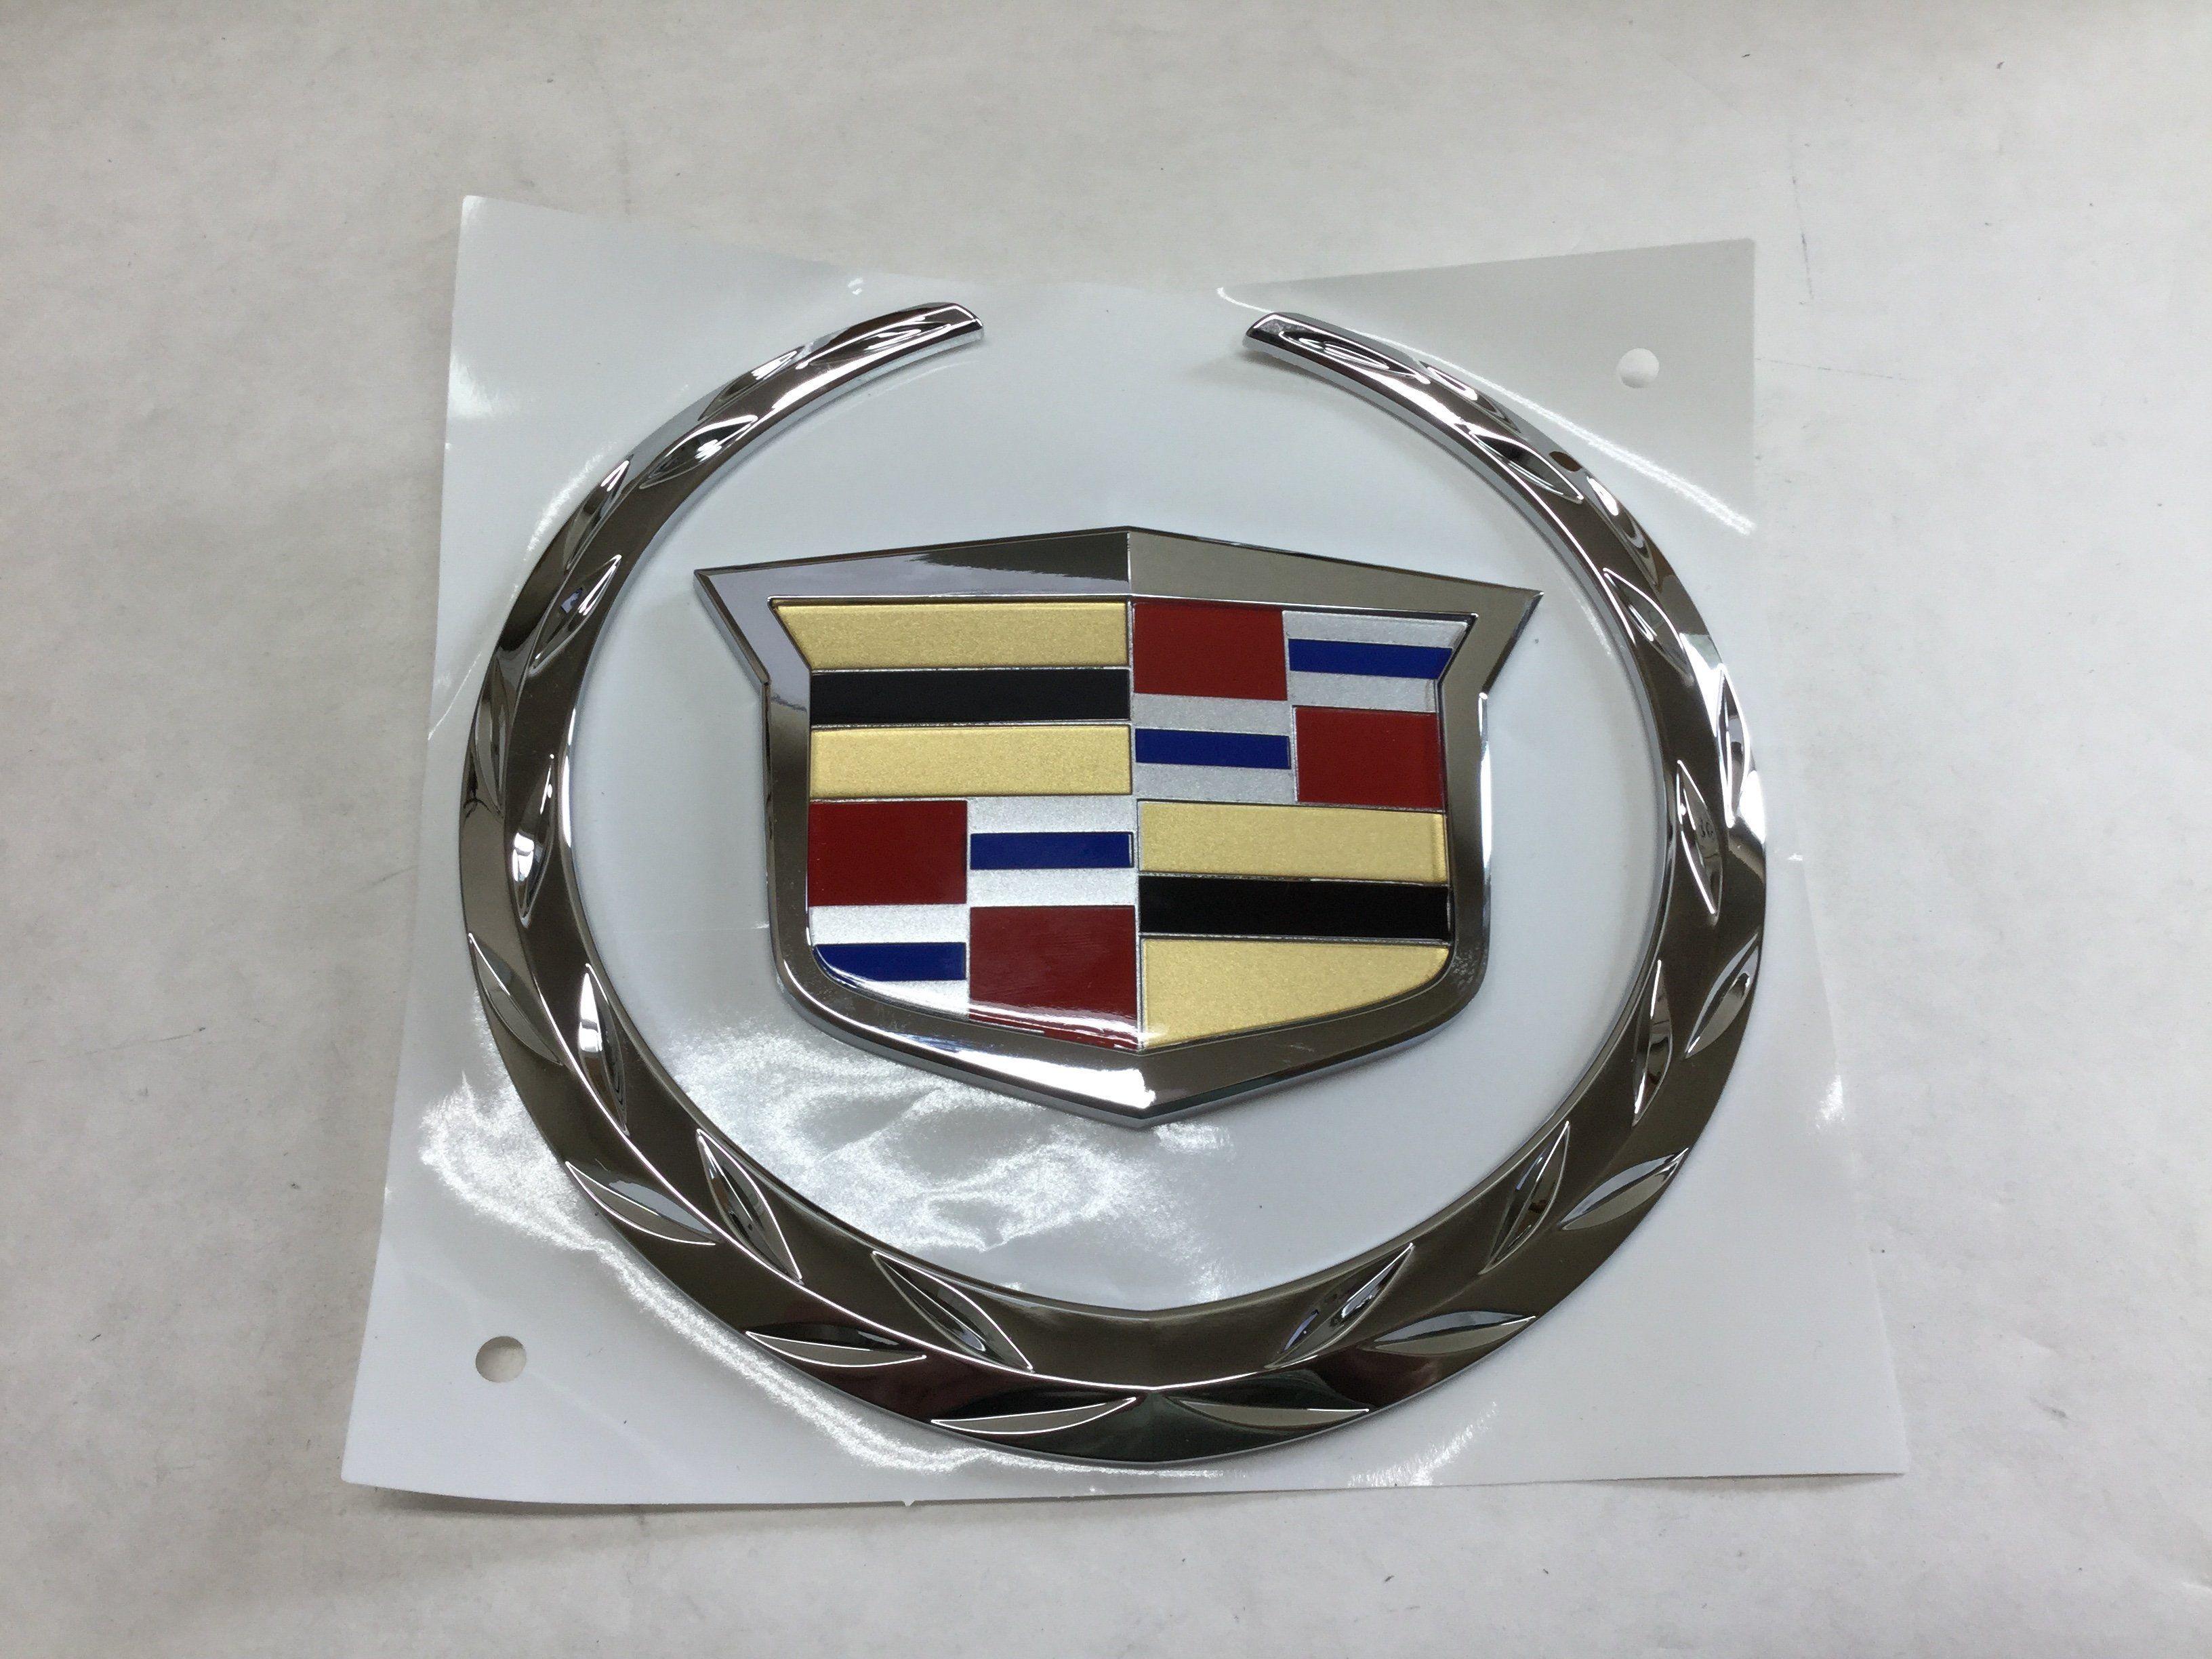 Escalade Logo - New 2007-2014 Cadillac Escalade Grille Emblem Wreath Crest Chrome ...